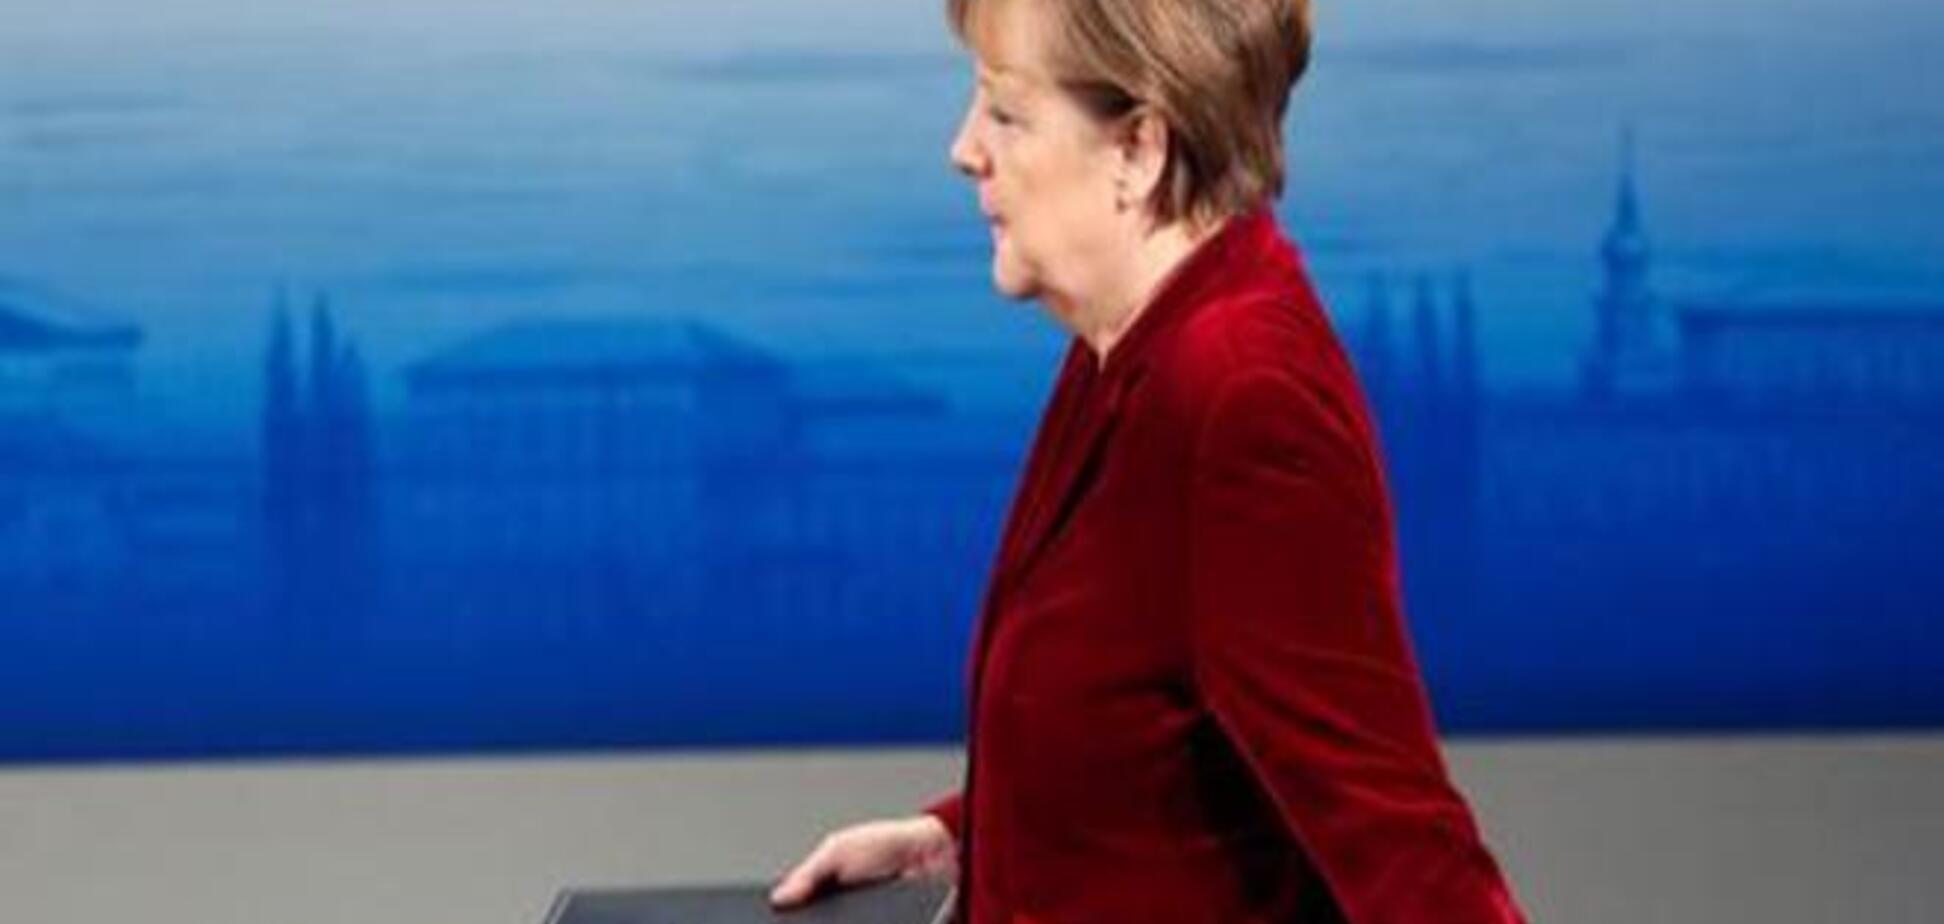 Комментарий: Усилия Меркель заслуживают уважения